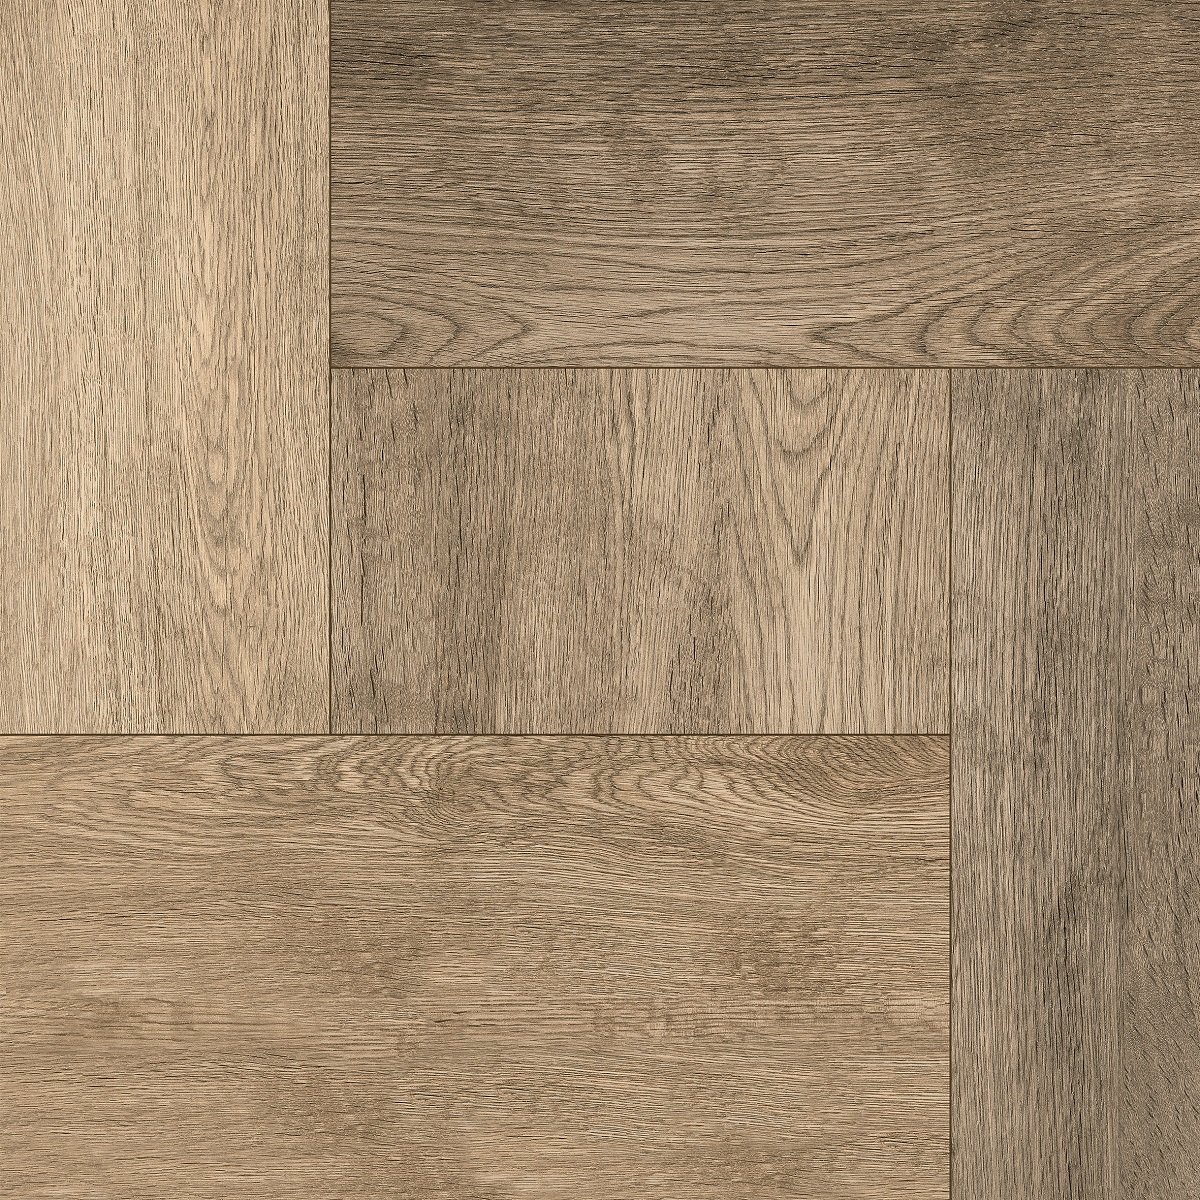 Home Wood коричневый д/пола 40*40 4N7830, Golden Tile